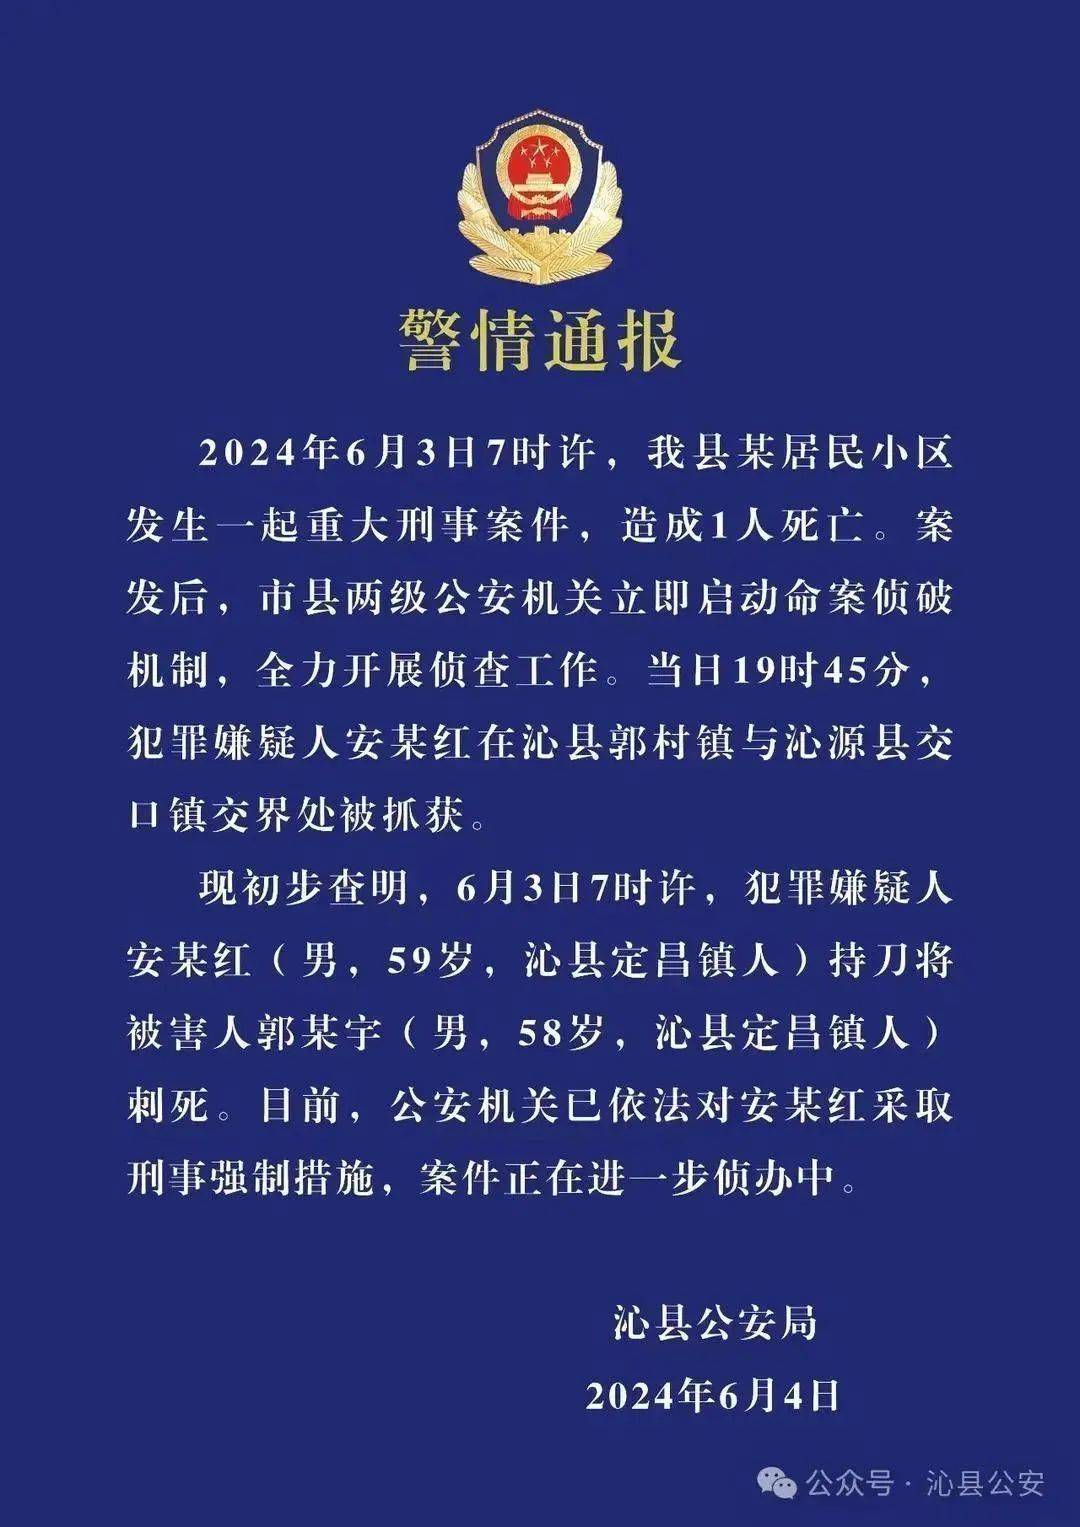 山西沁县政协主席遇害 犯罪嫌疑人曾被指违规占有公房